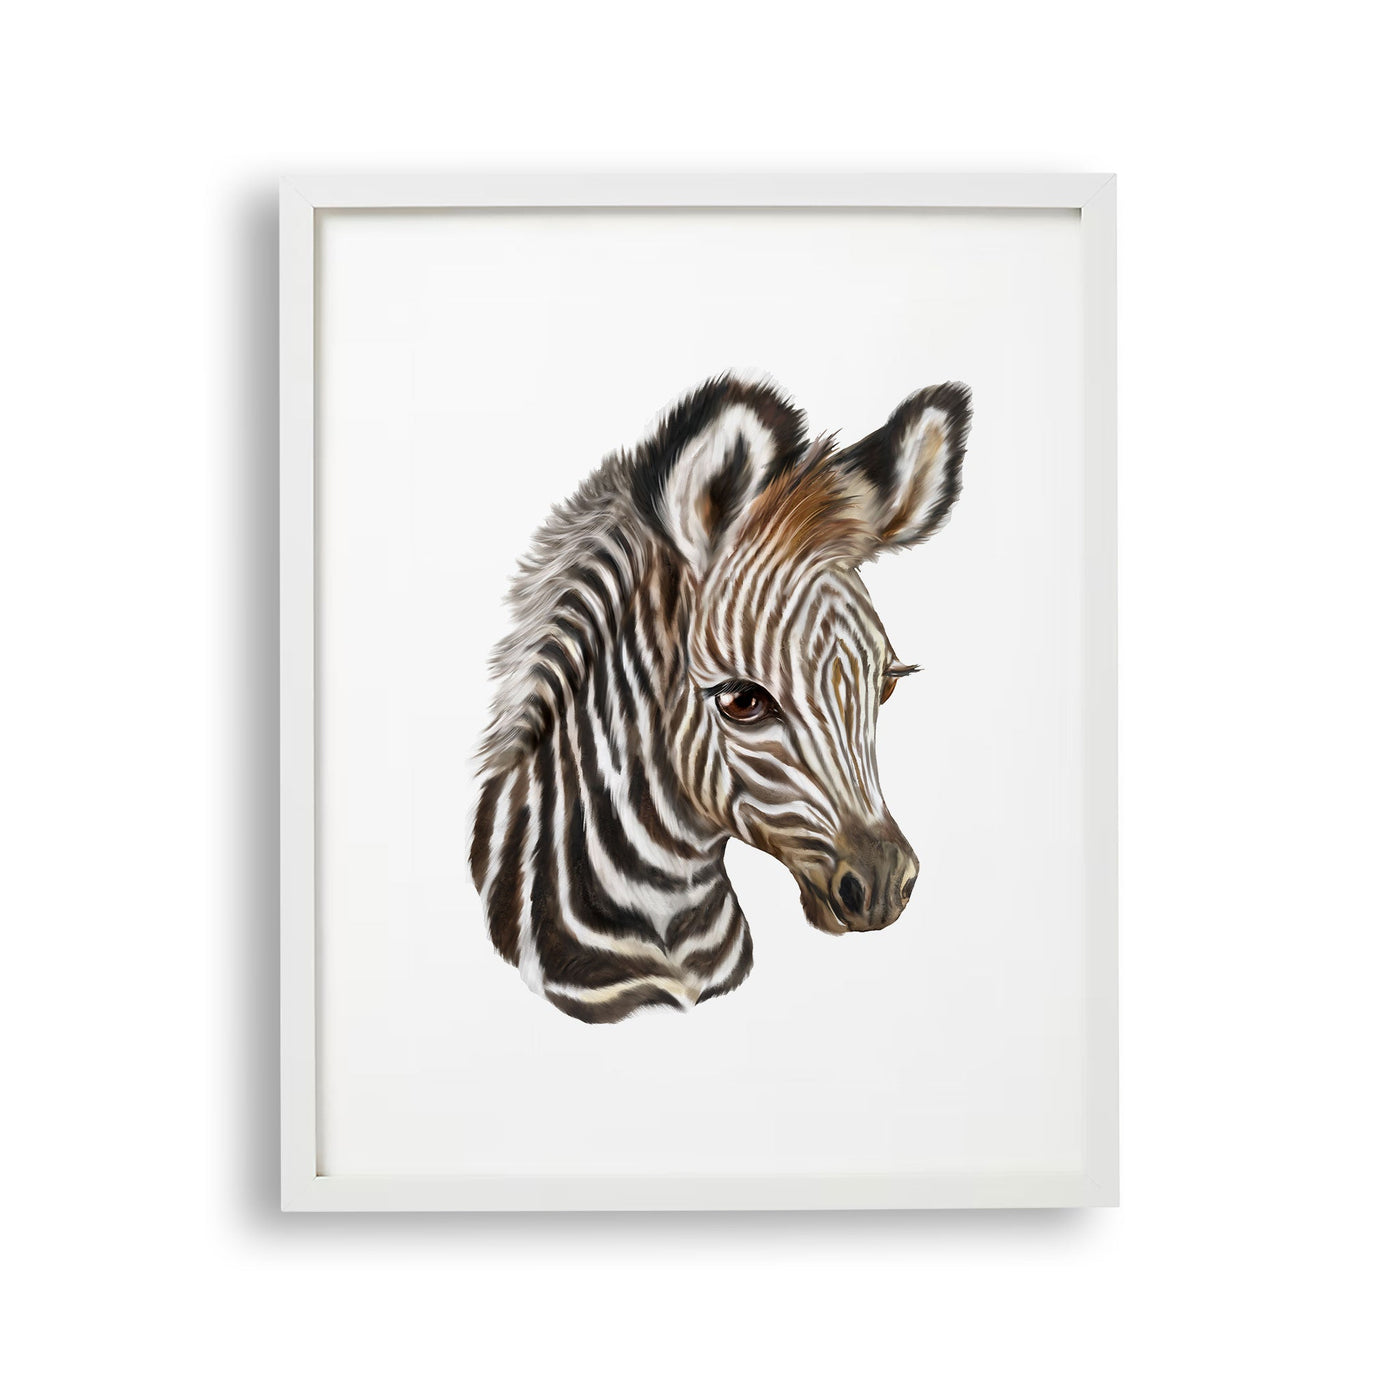 tablou-cu-rama-pentru-copii-care-ilustreaza-un-pui-de-zebra-care-arata-frumusetea-si-detaliile-acestui-animal-zebra-foal